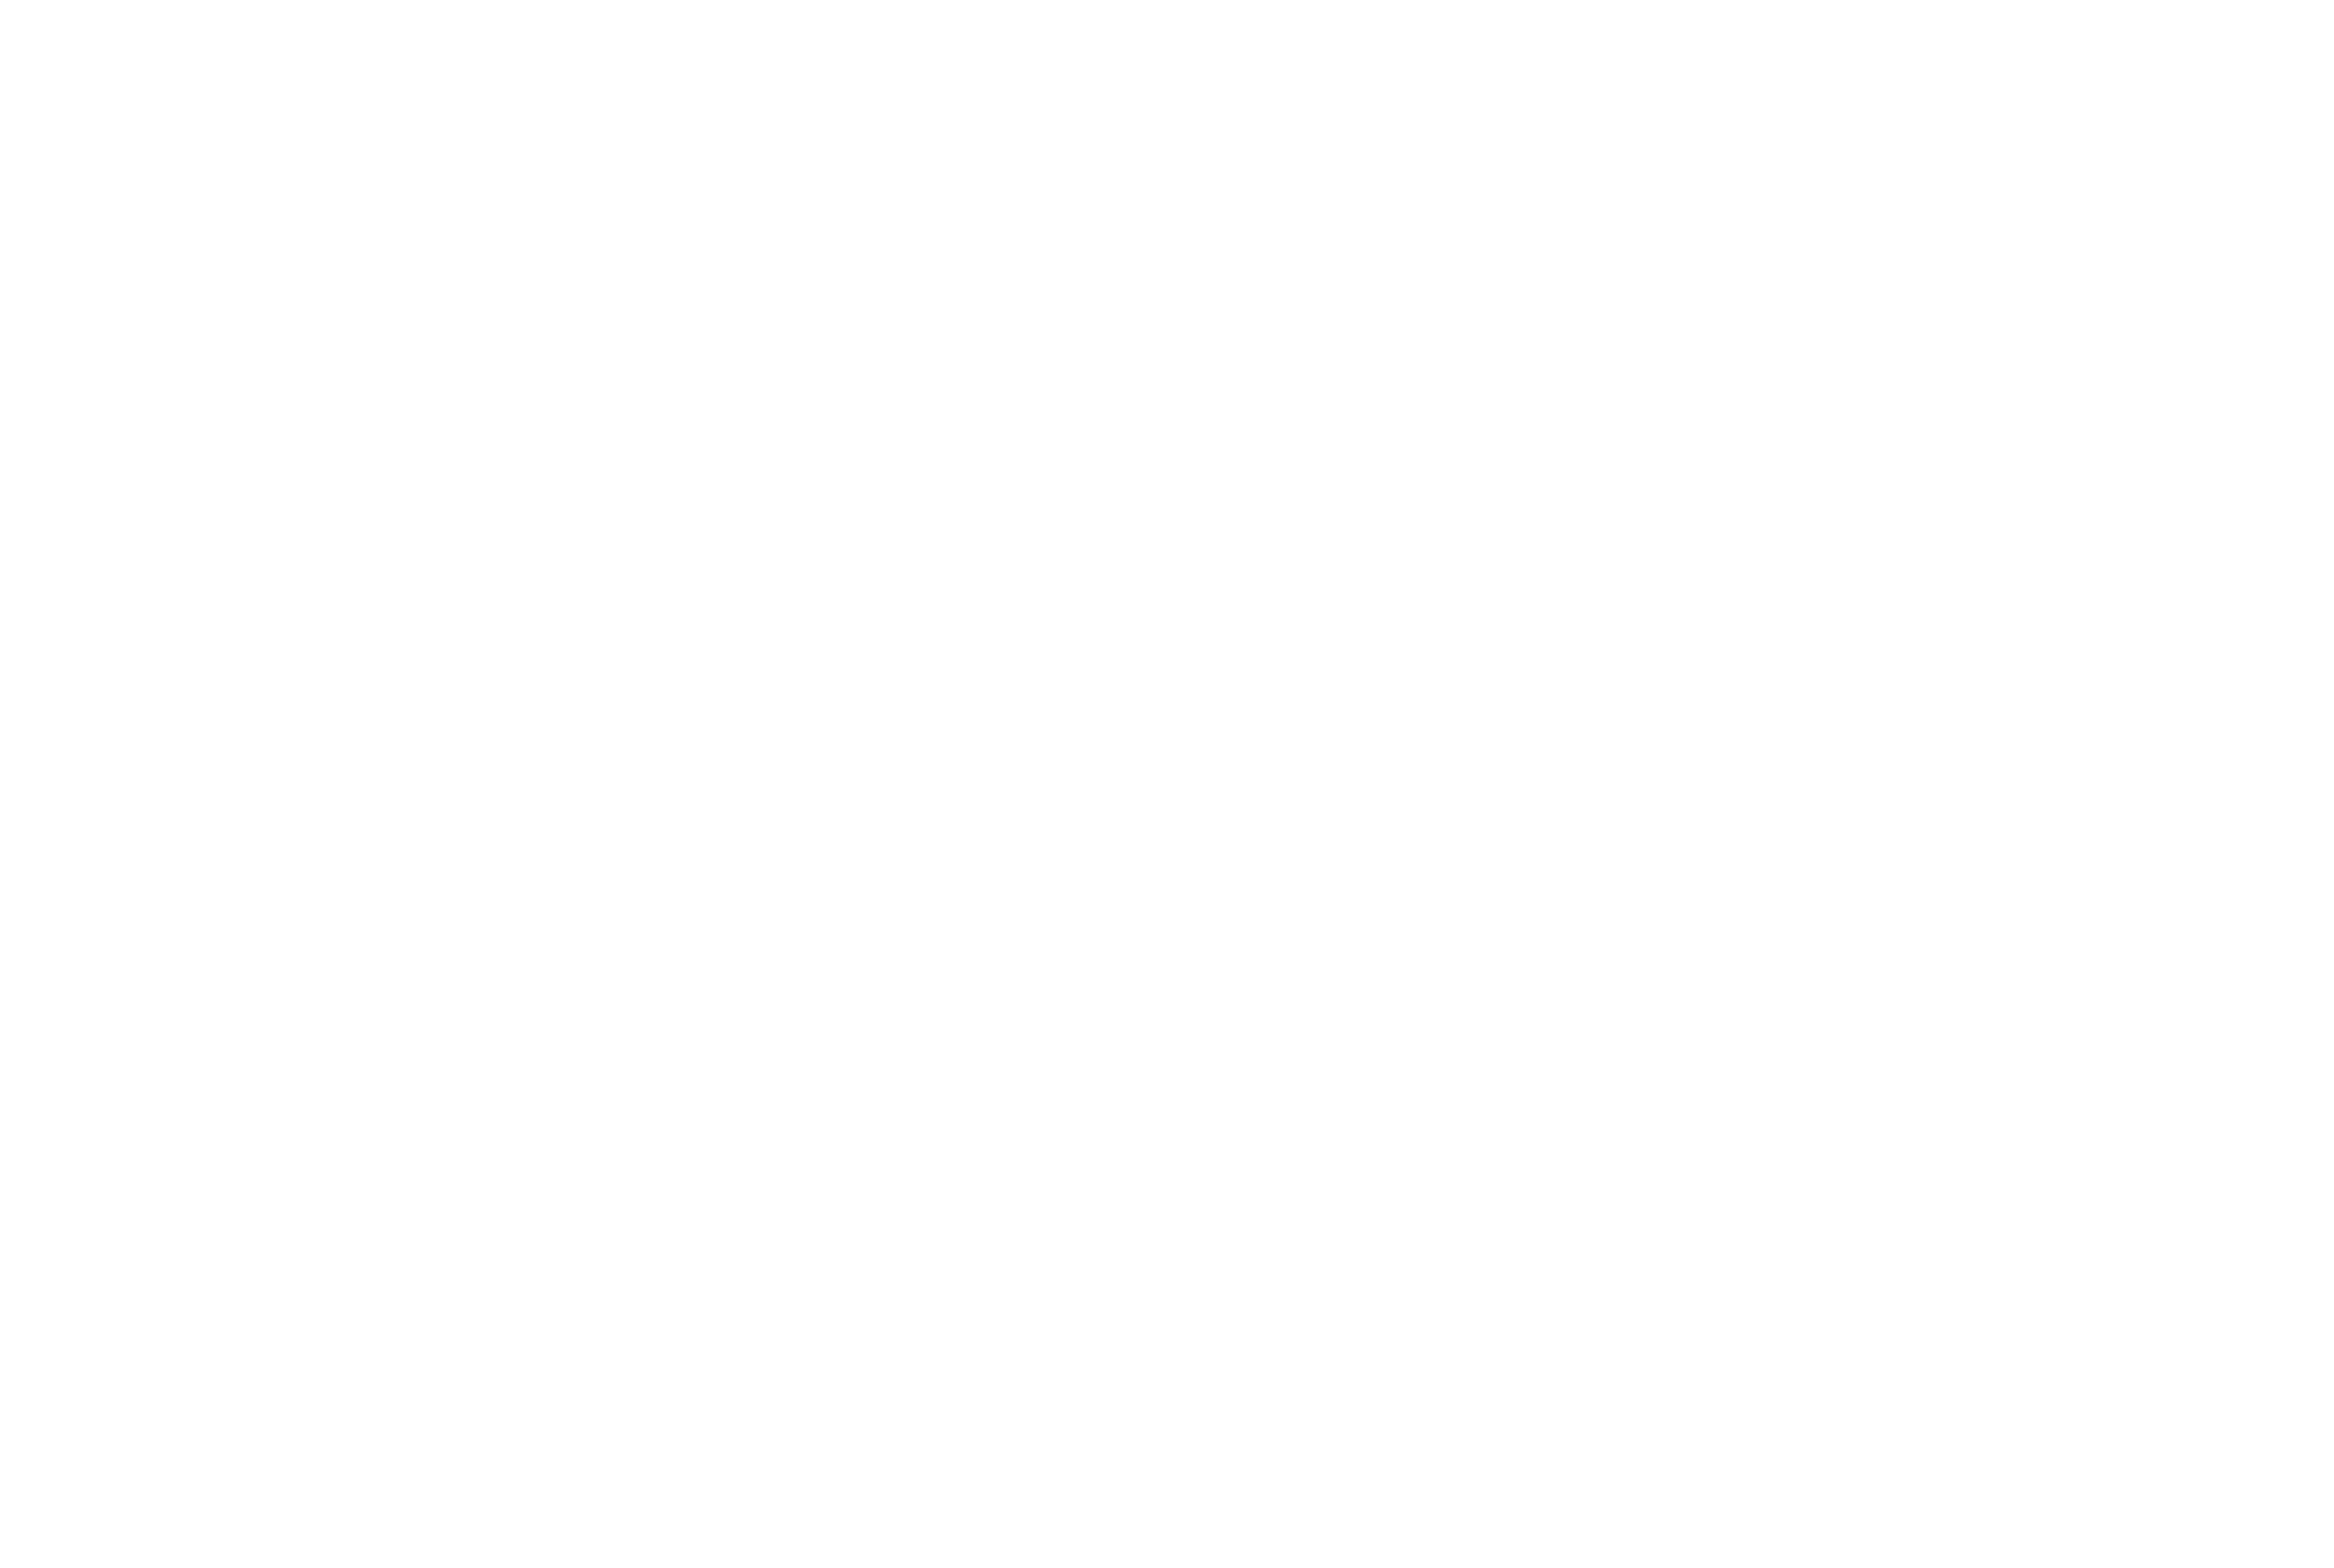 Lucid Day Logo (R) White